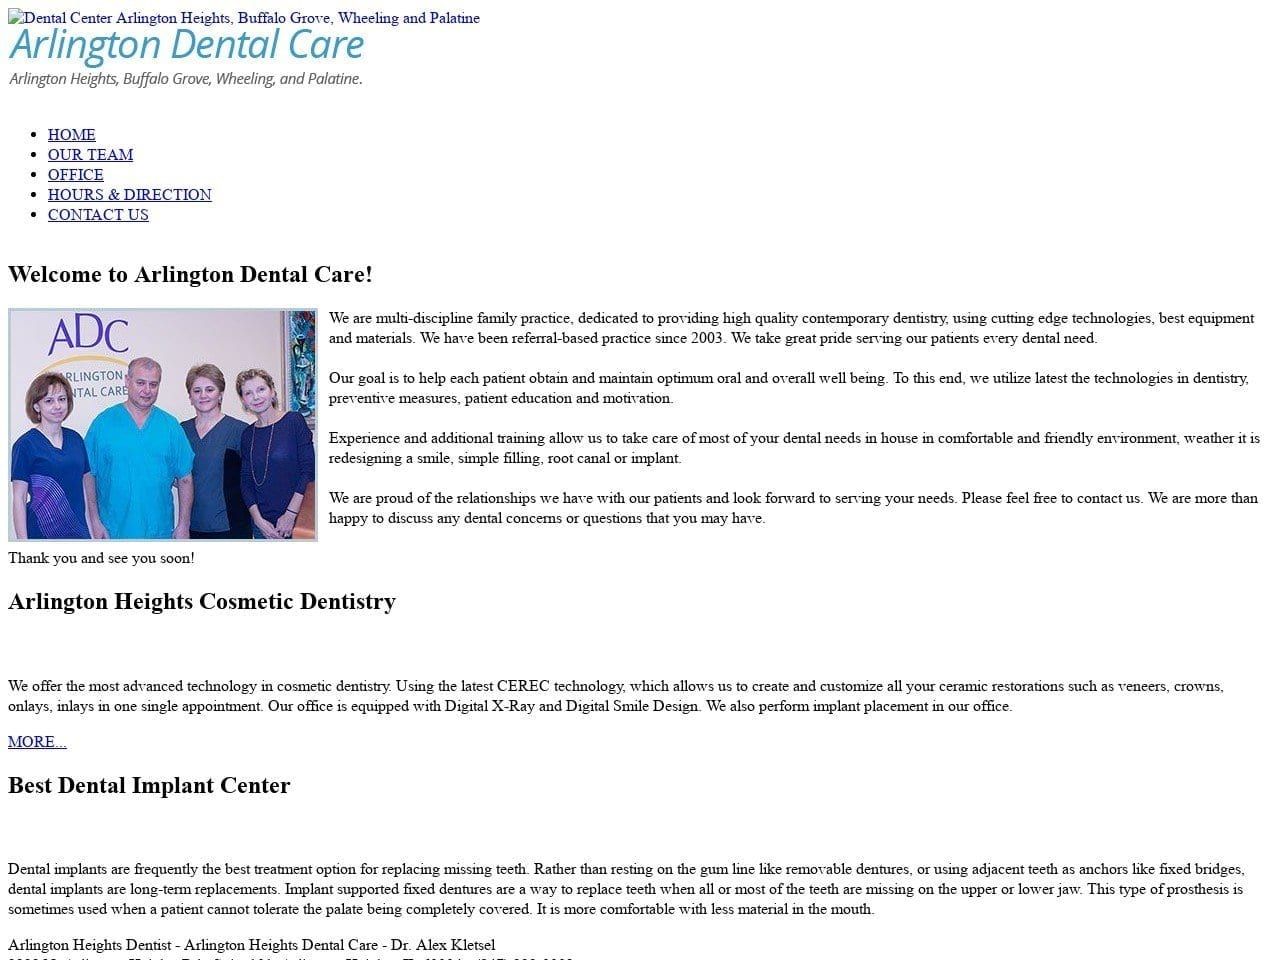 Arlington Dental Care Website Screenshot from adcdds.com